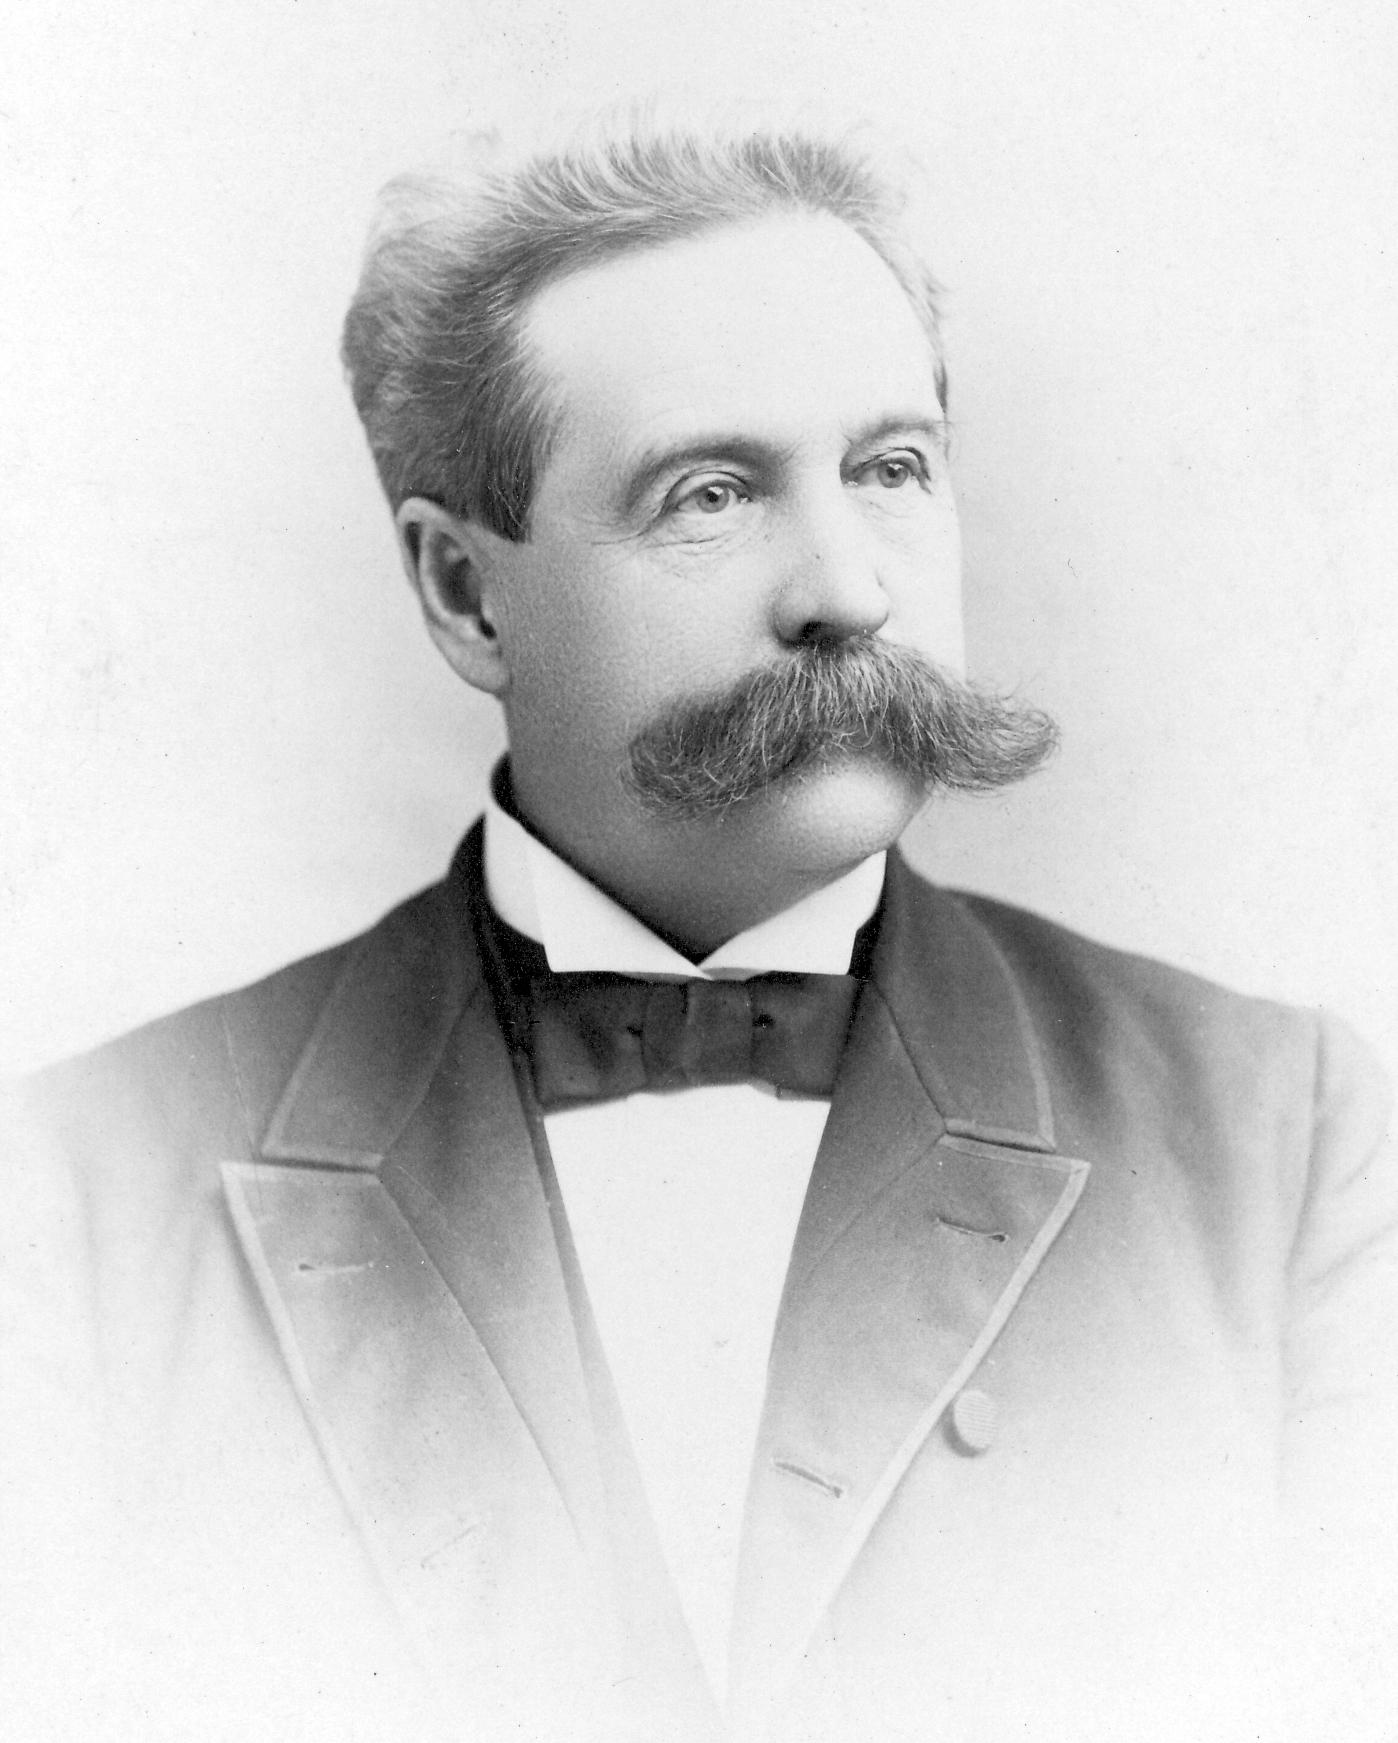 Dr. Henry R. Parker